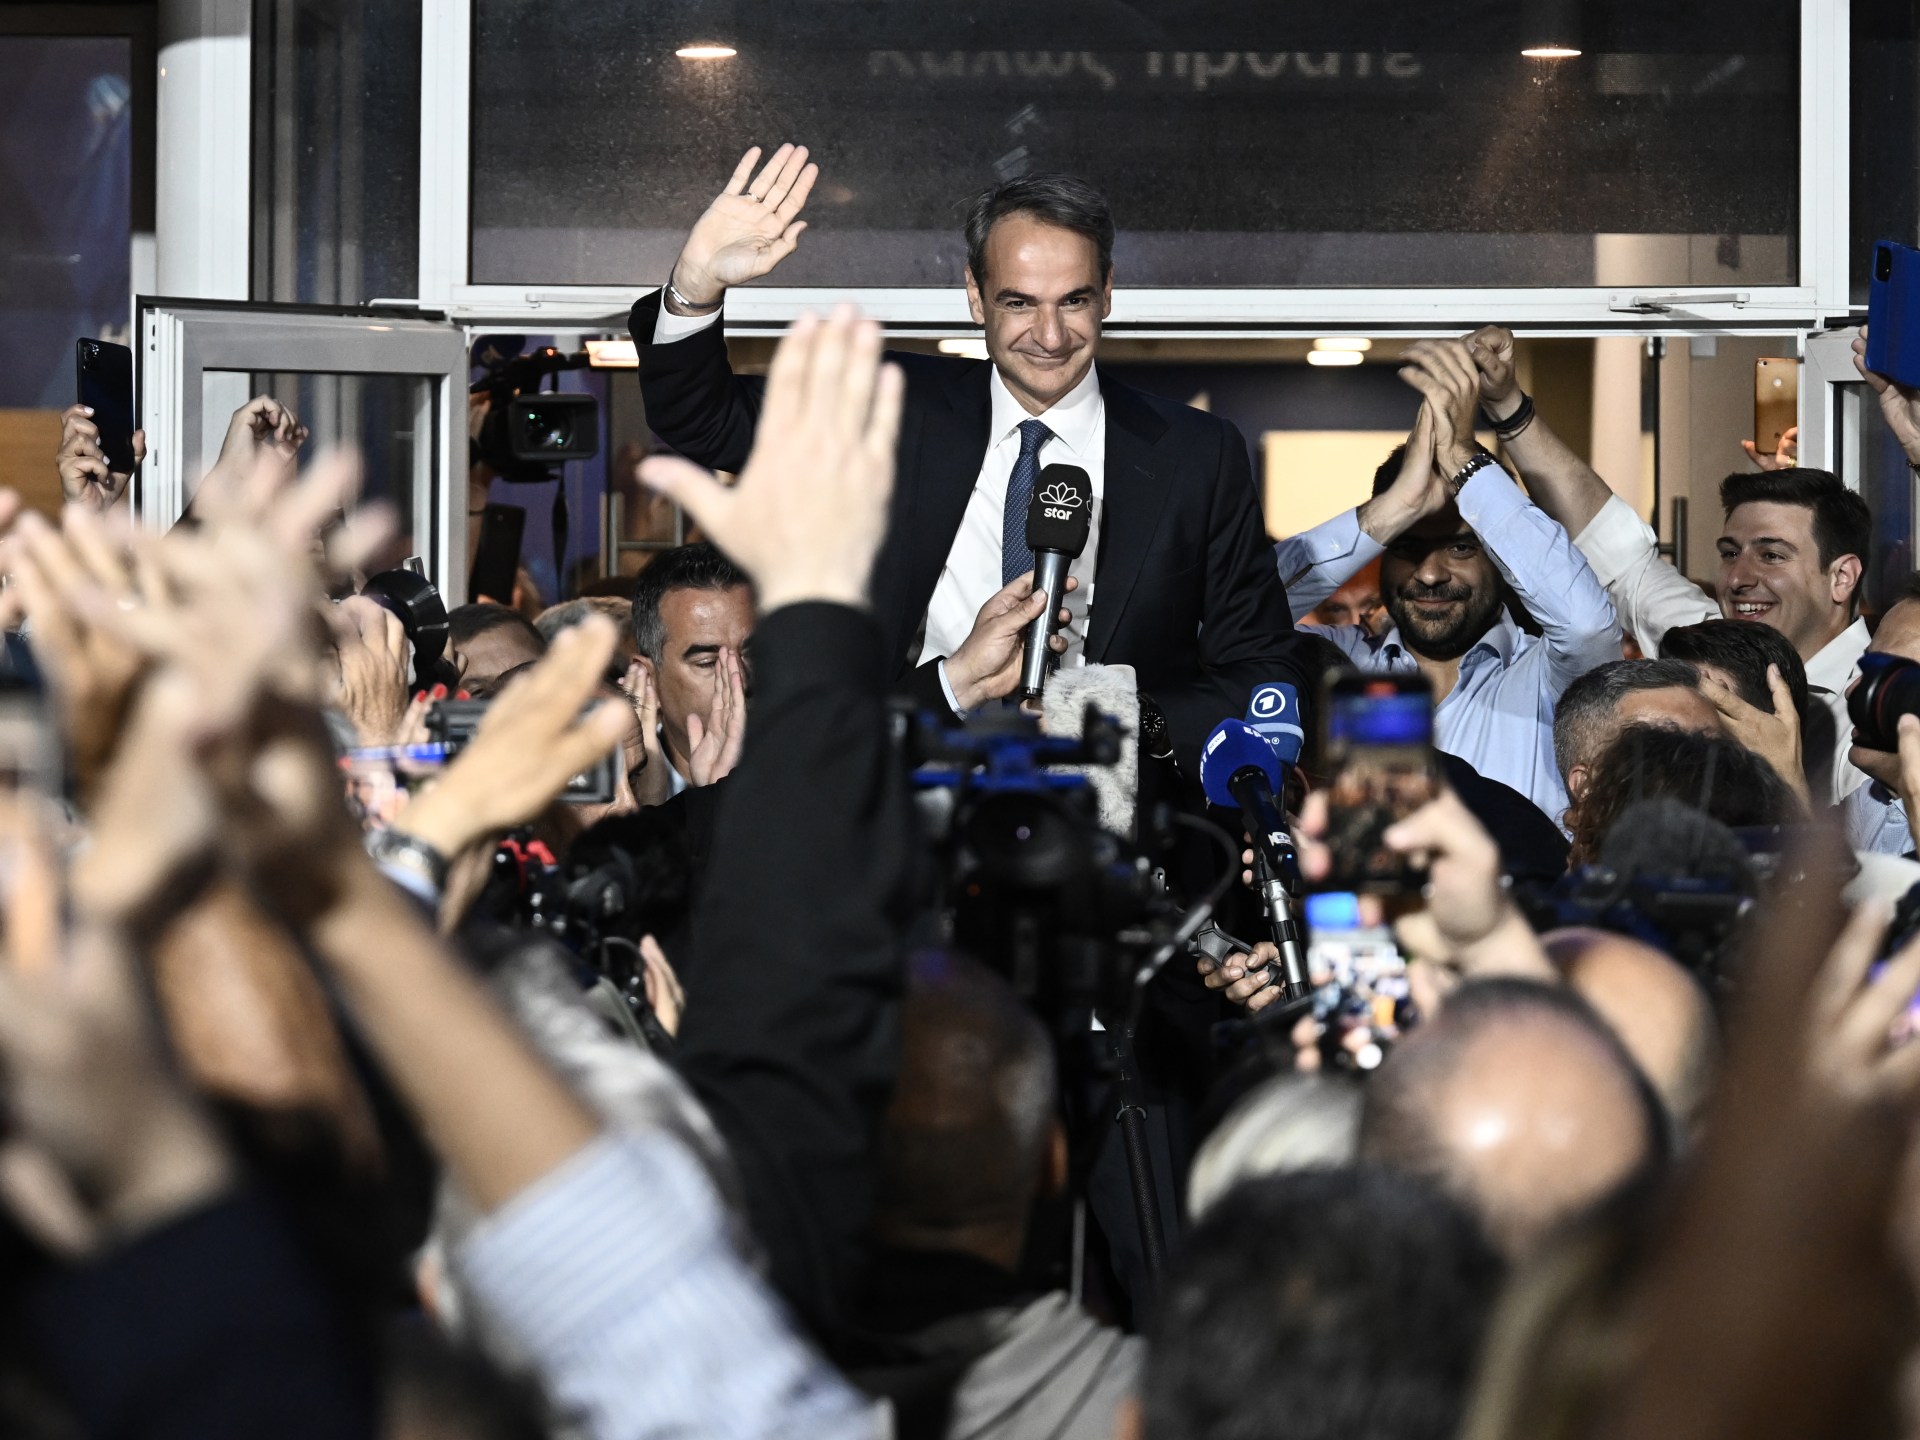 Il partito conservatore greco vince con forza alle elezioni nazionali |  Notizie elettorali